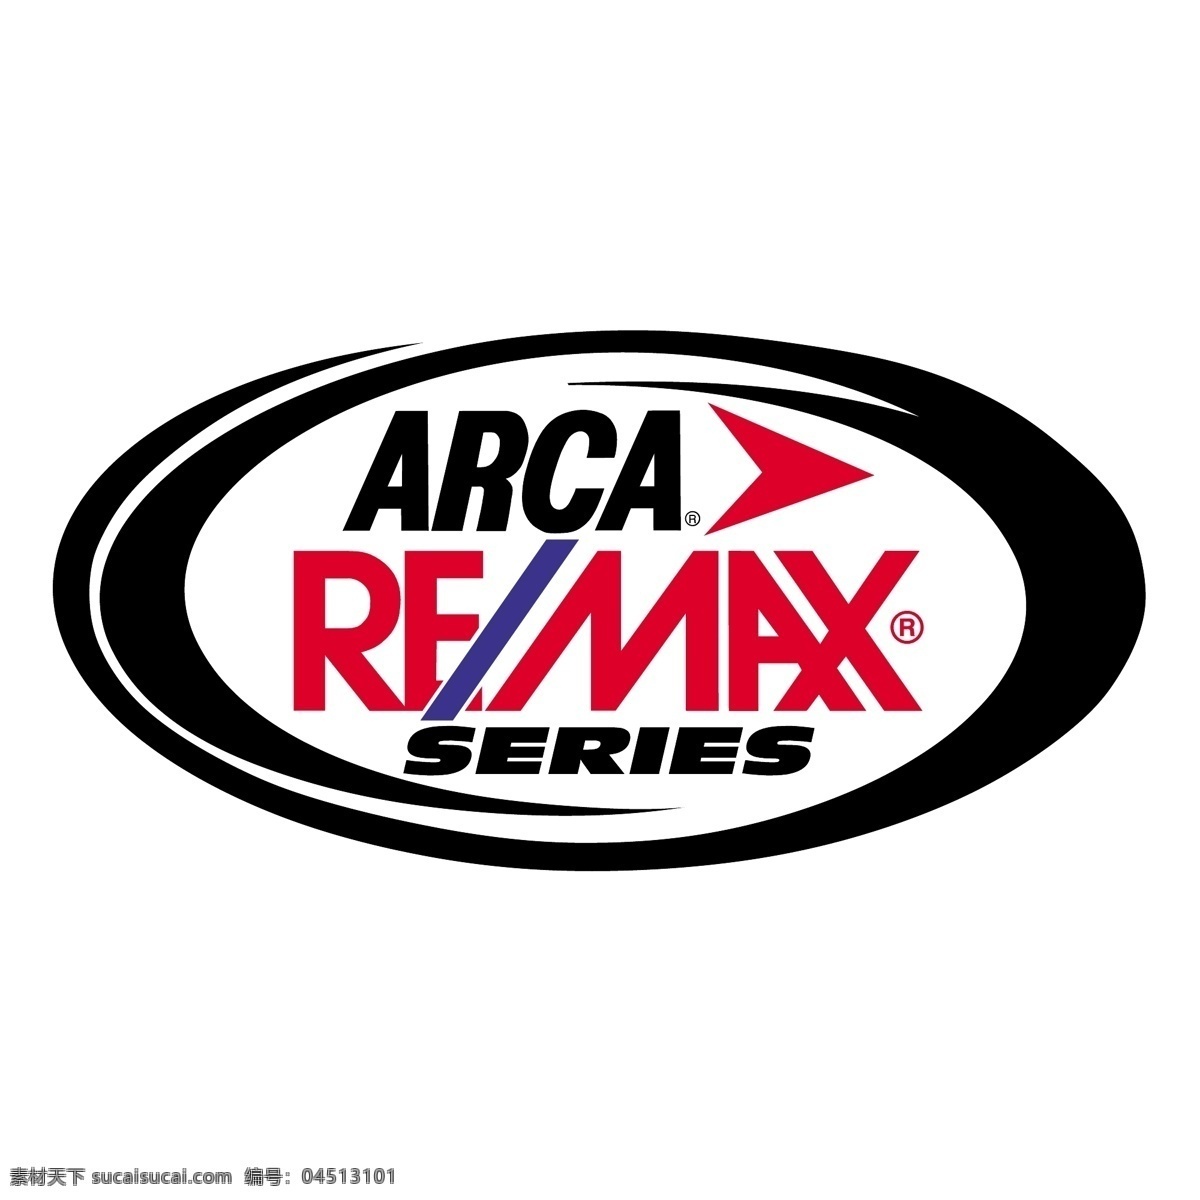 方舟 remax 赛车 系列 自由区 标志 免费 psd源文件 logo设计